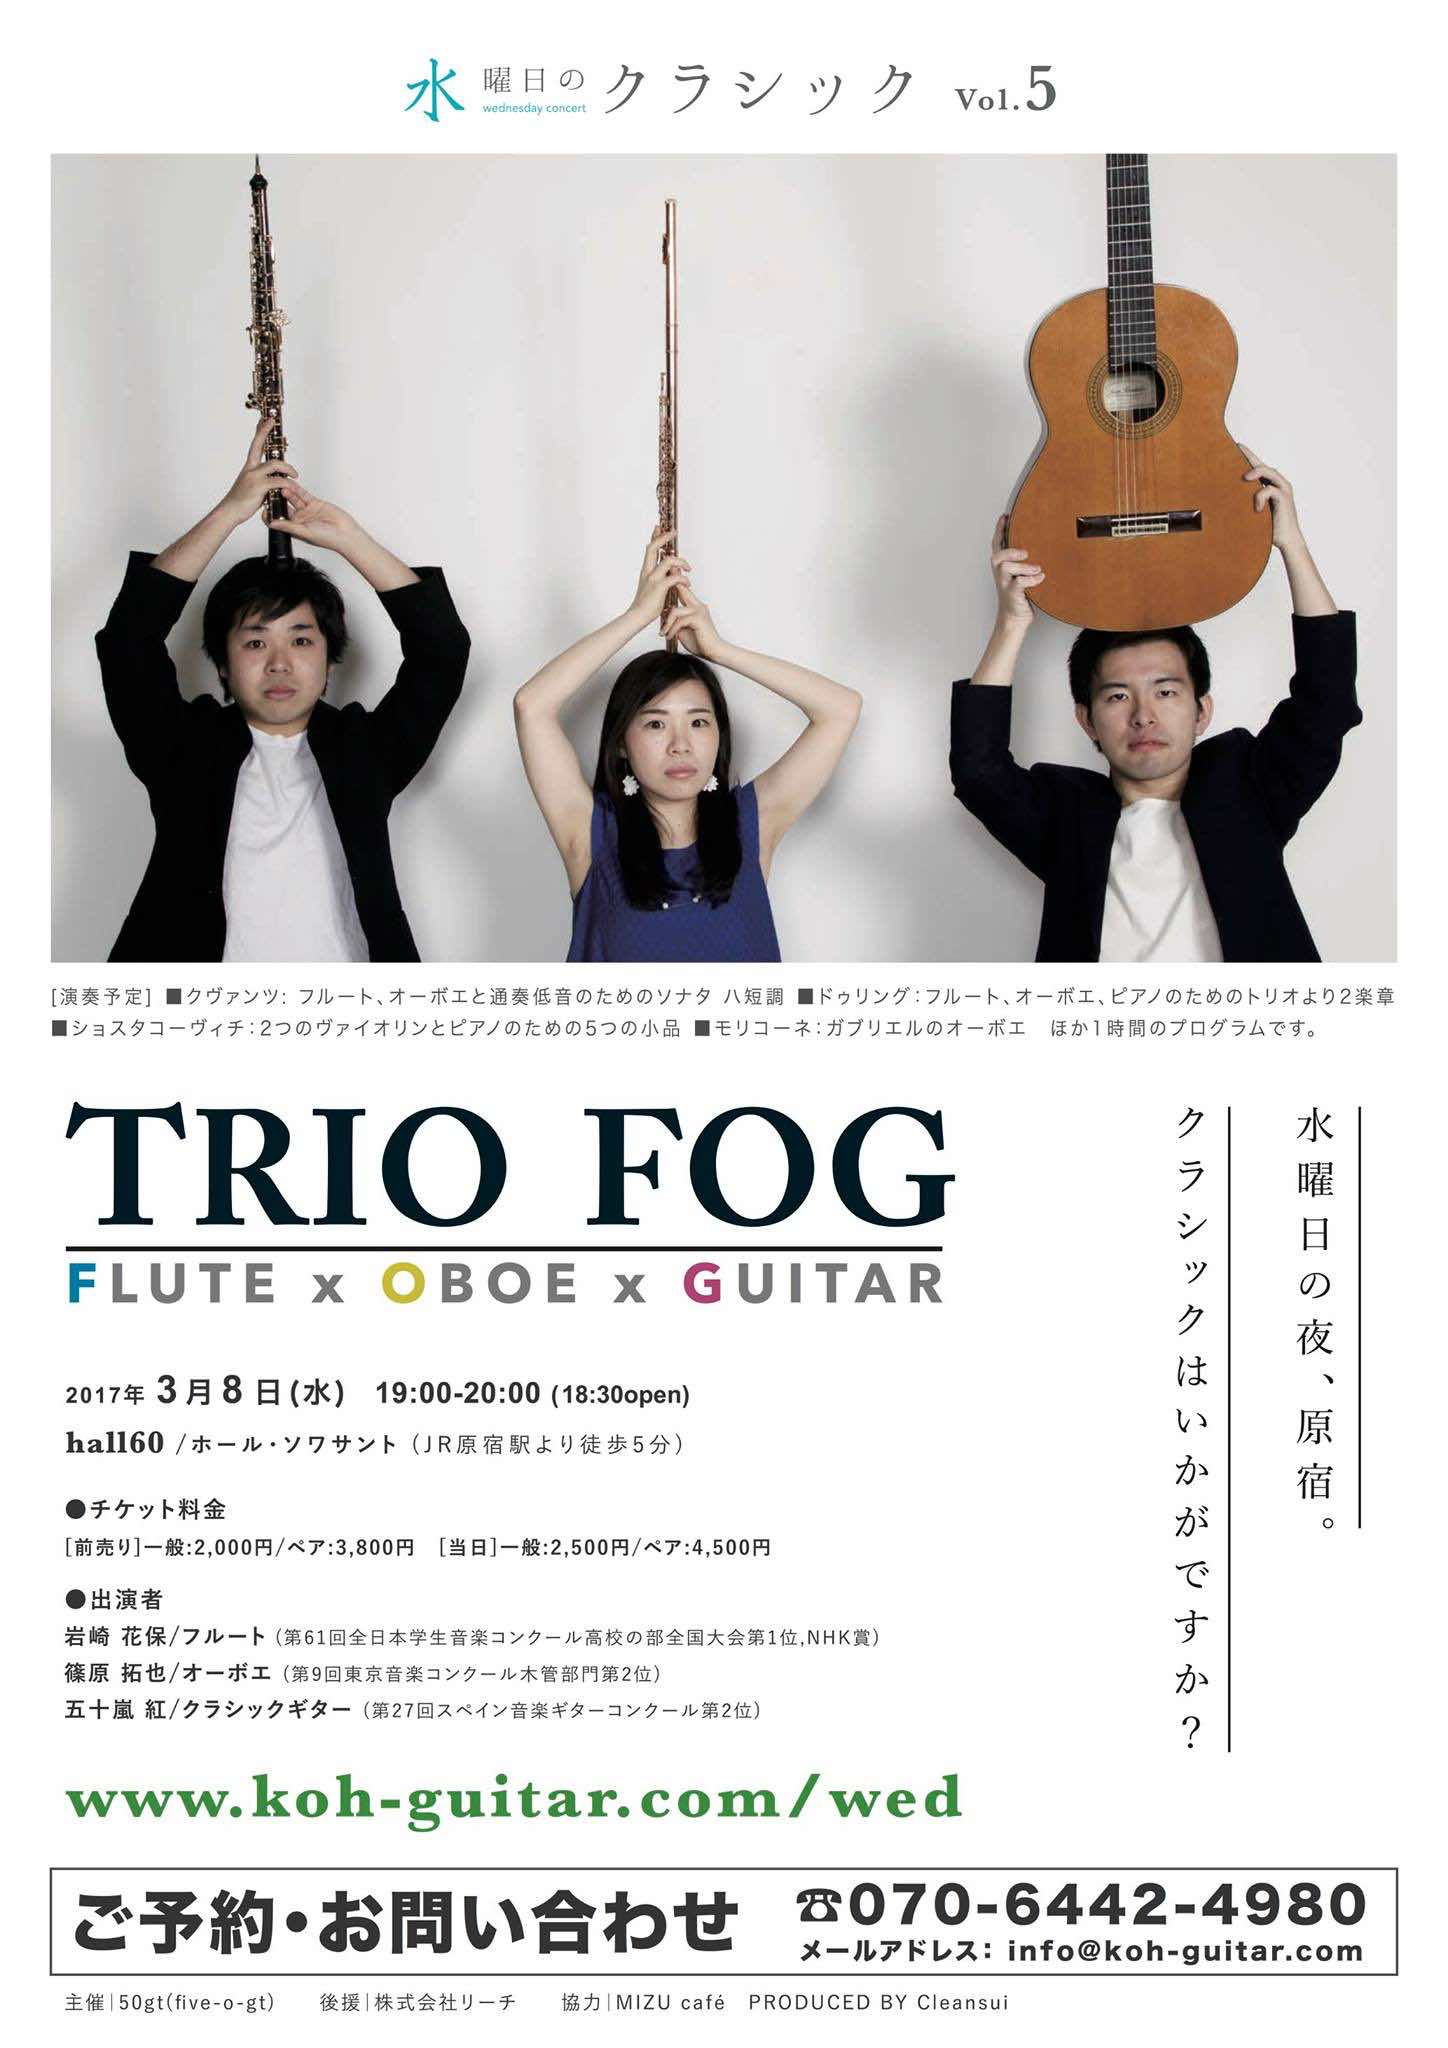 水曜日のクラシックin原宿 / Vol.5 Trio FOG